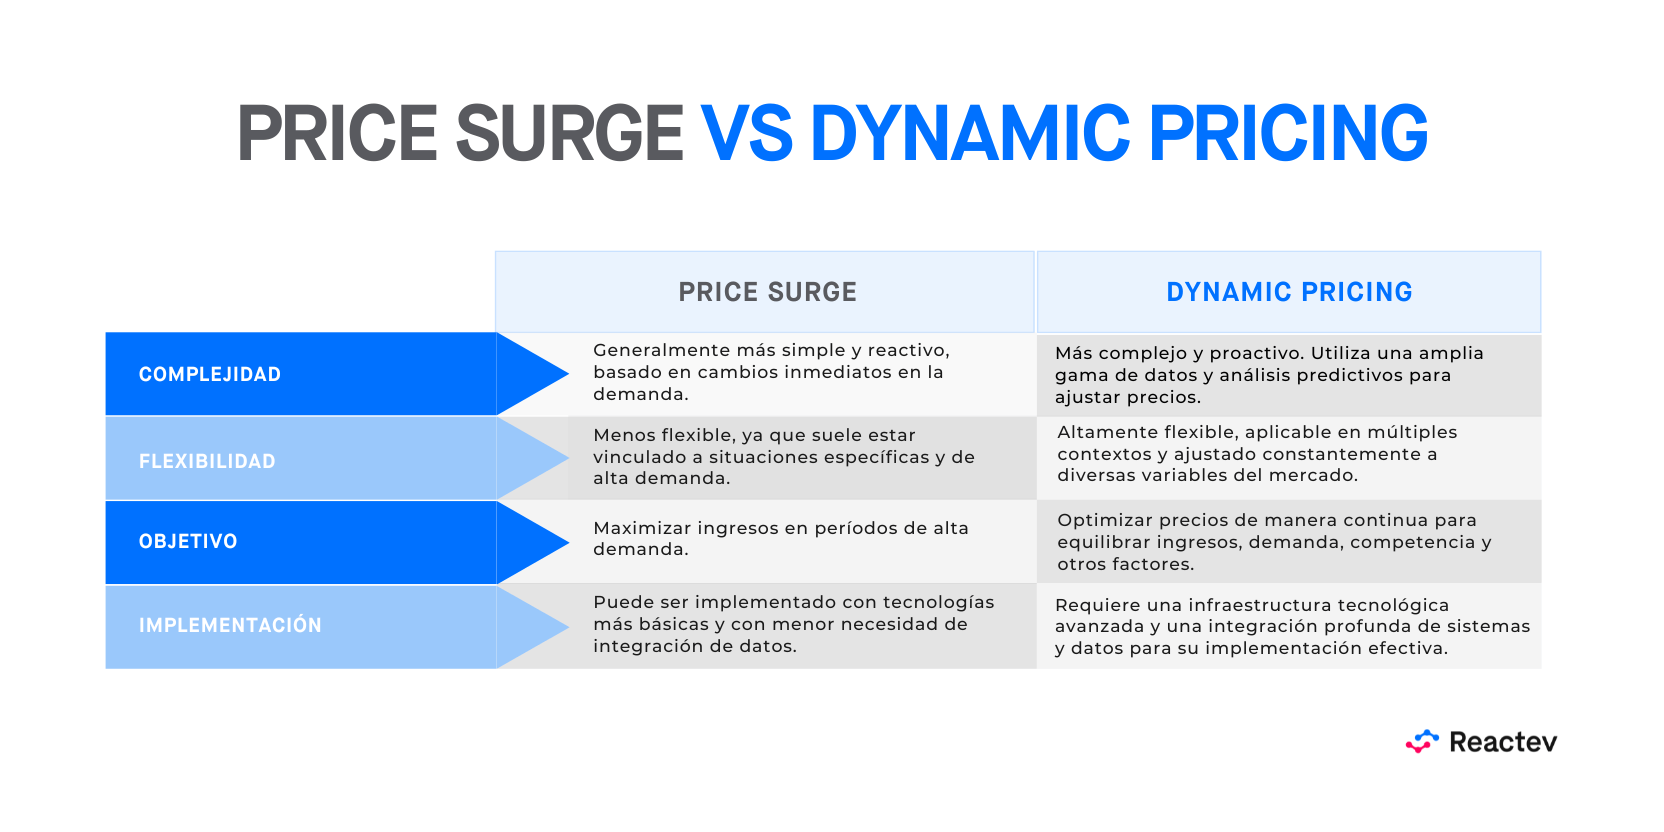 Price surge vs dynamic pricing